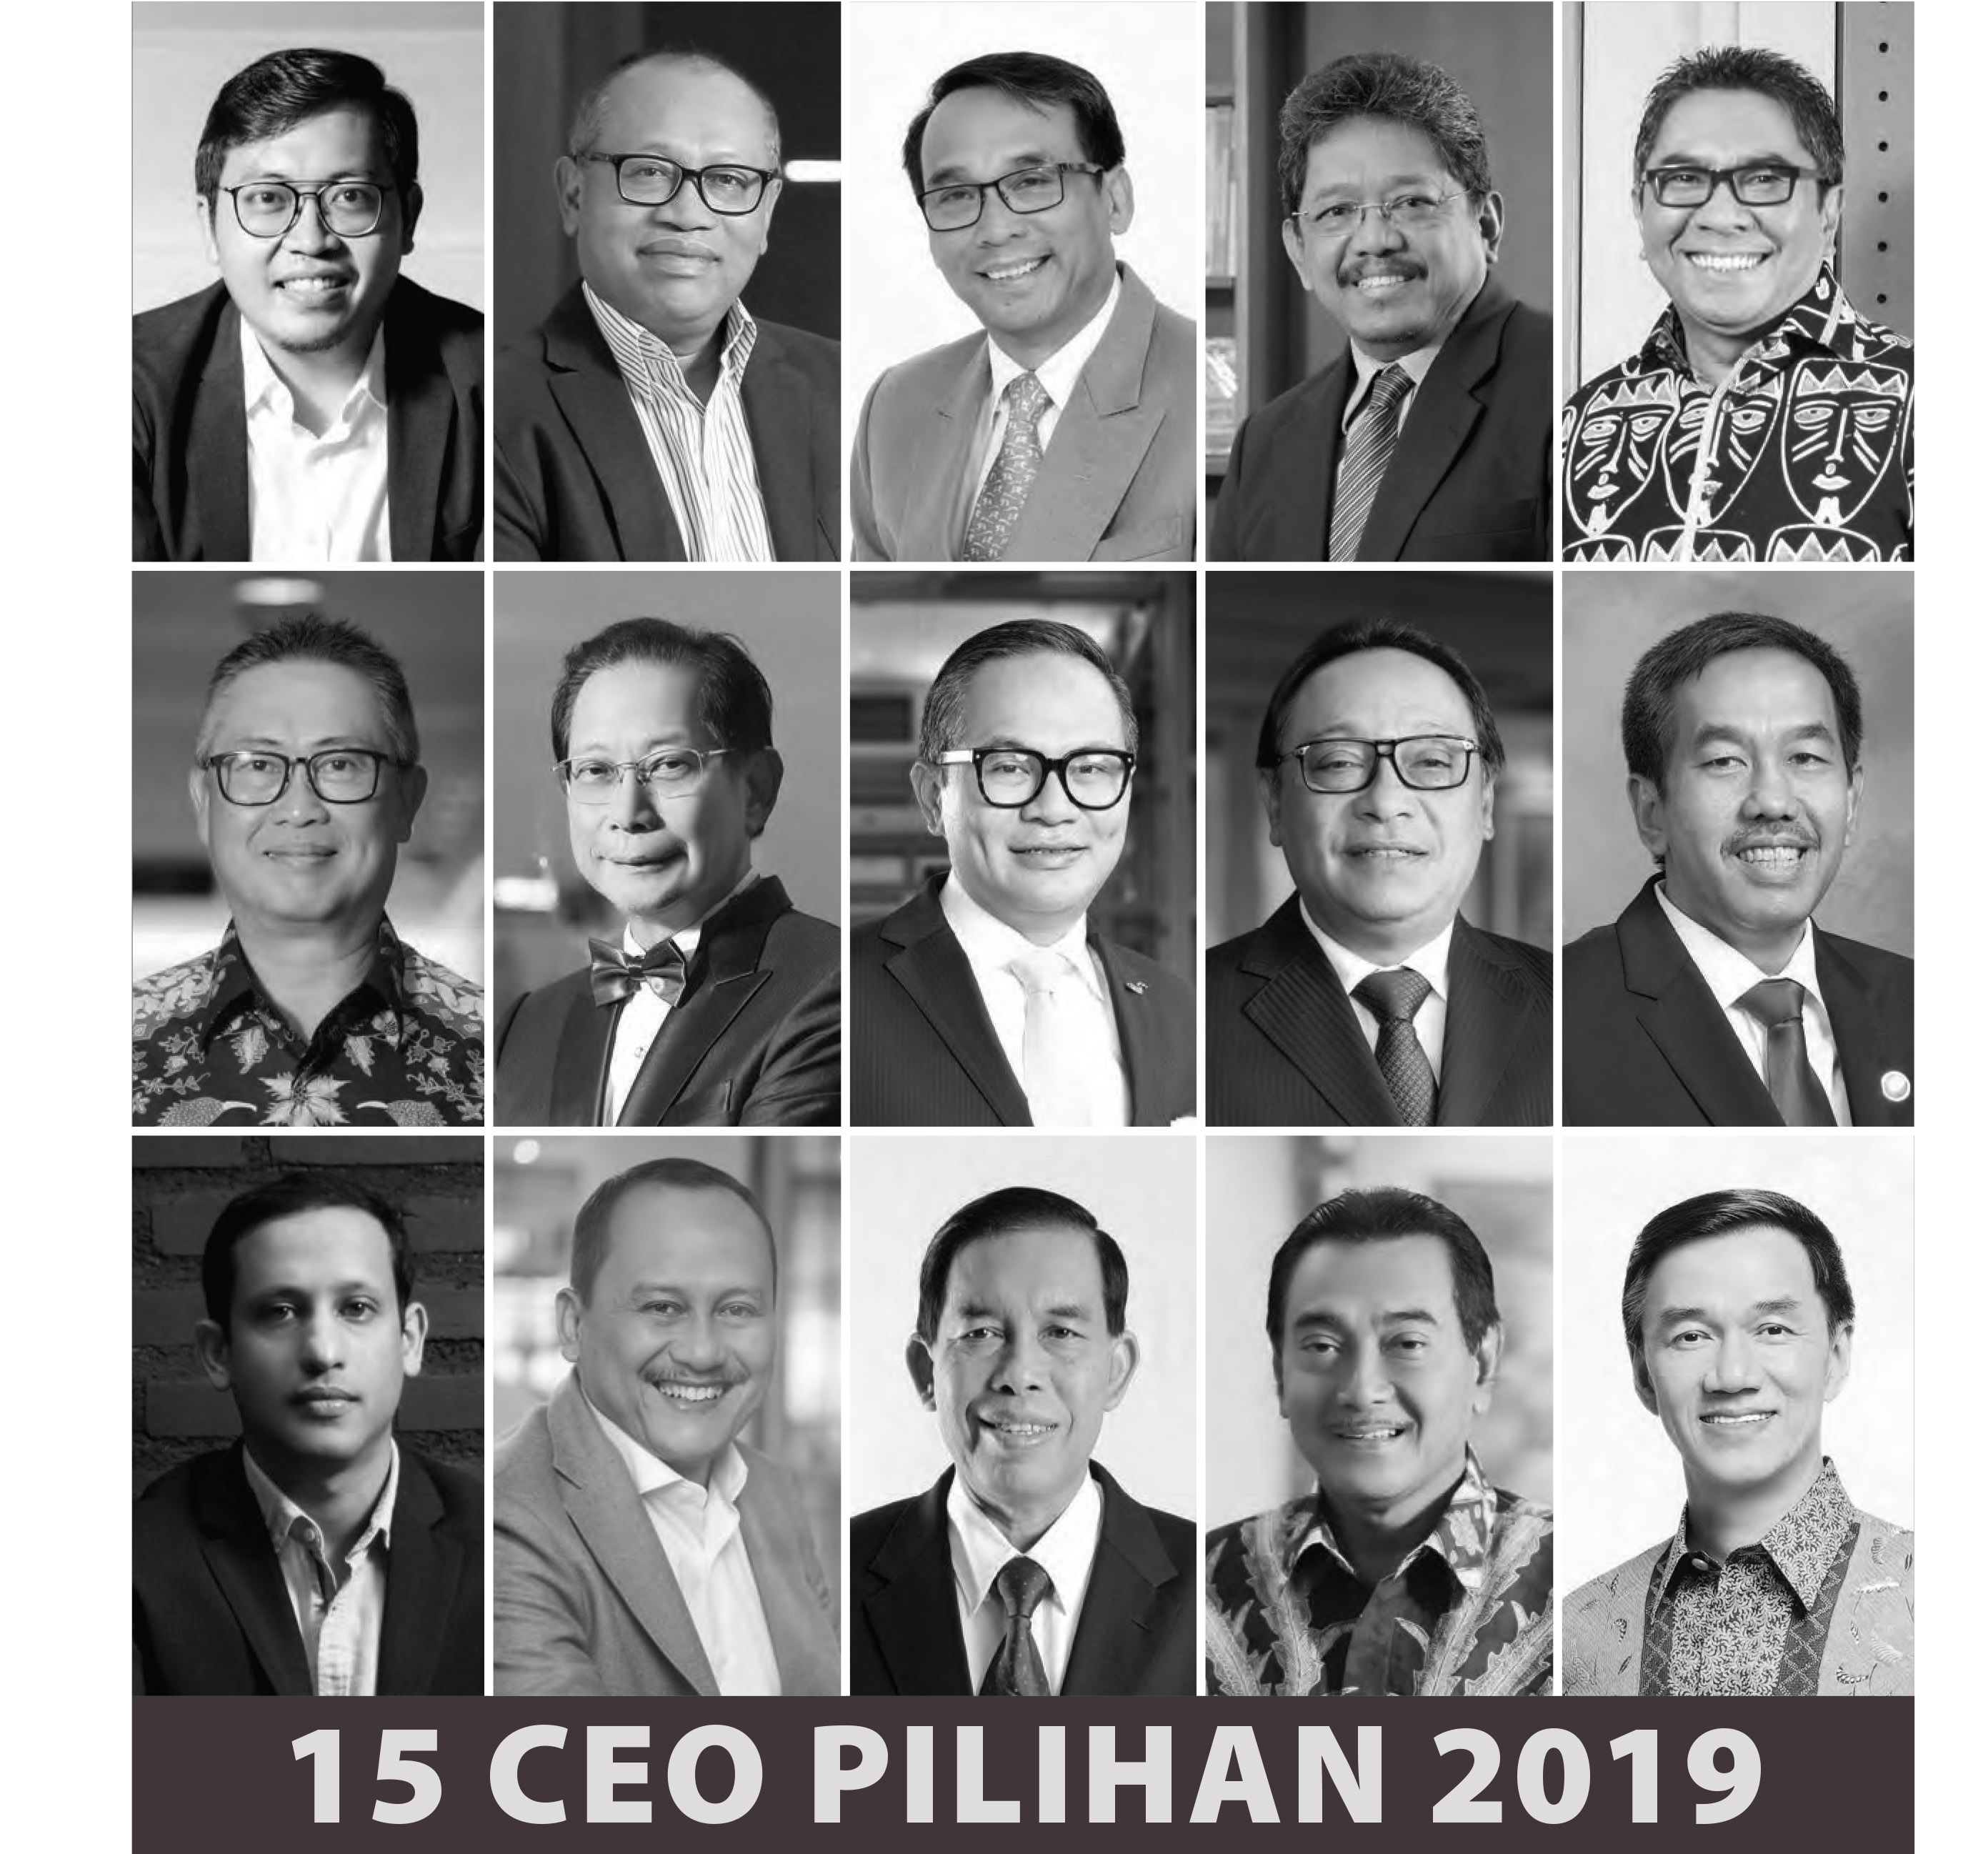 15 CEO Pilihan 2019